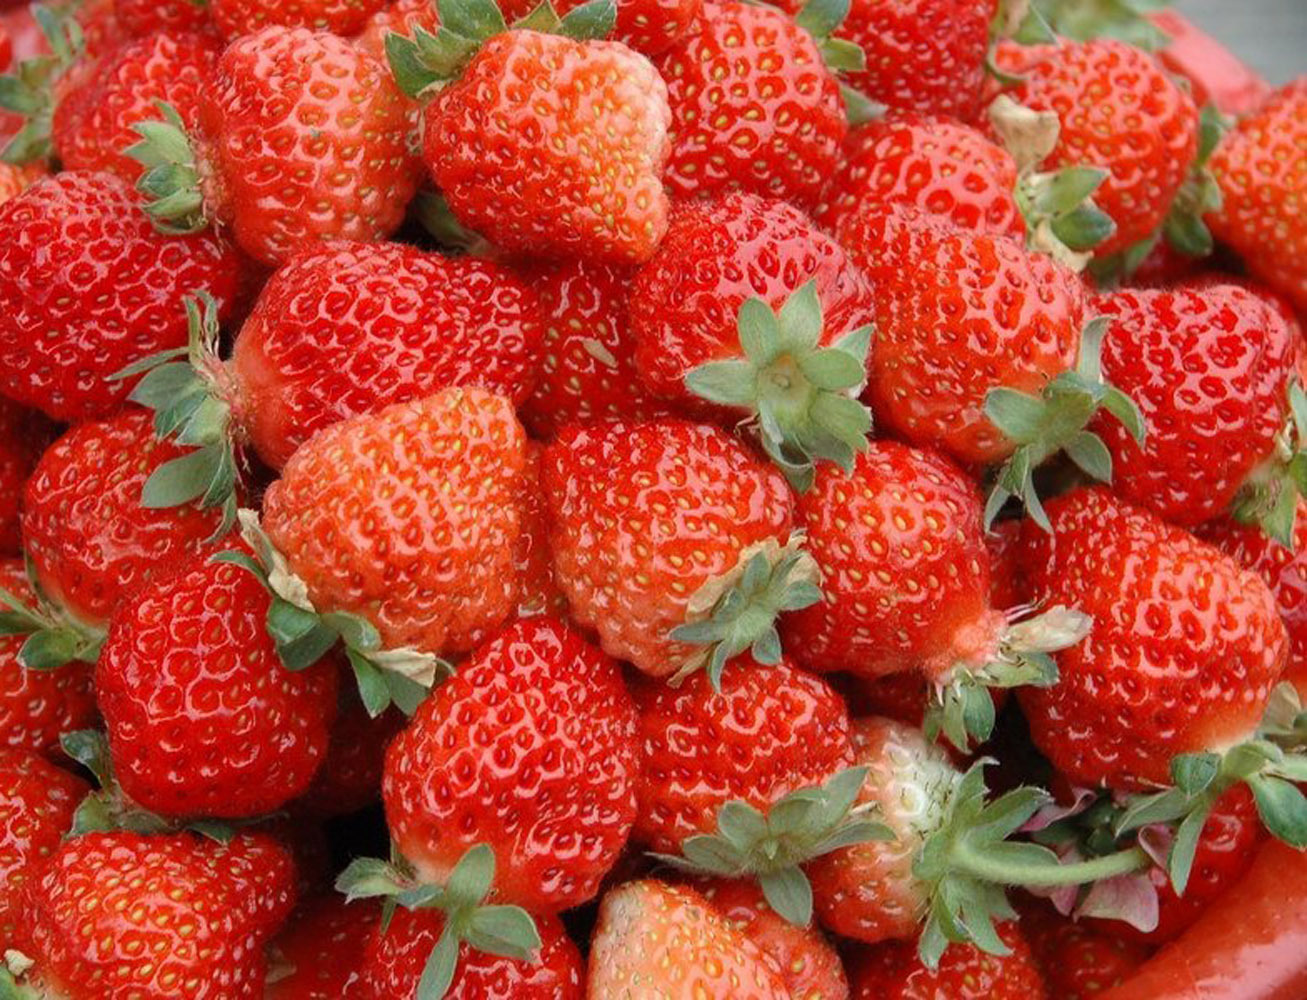 【汤山百年绿源】水果批发 新鲜奶油草莓 昌平草莓 1盒 400g